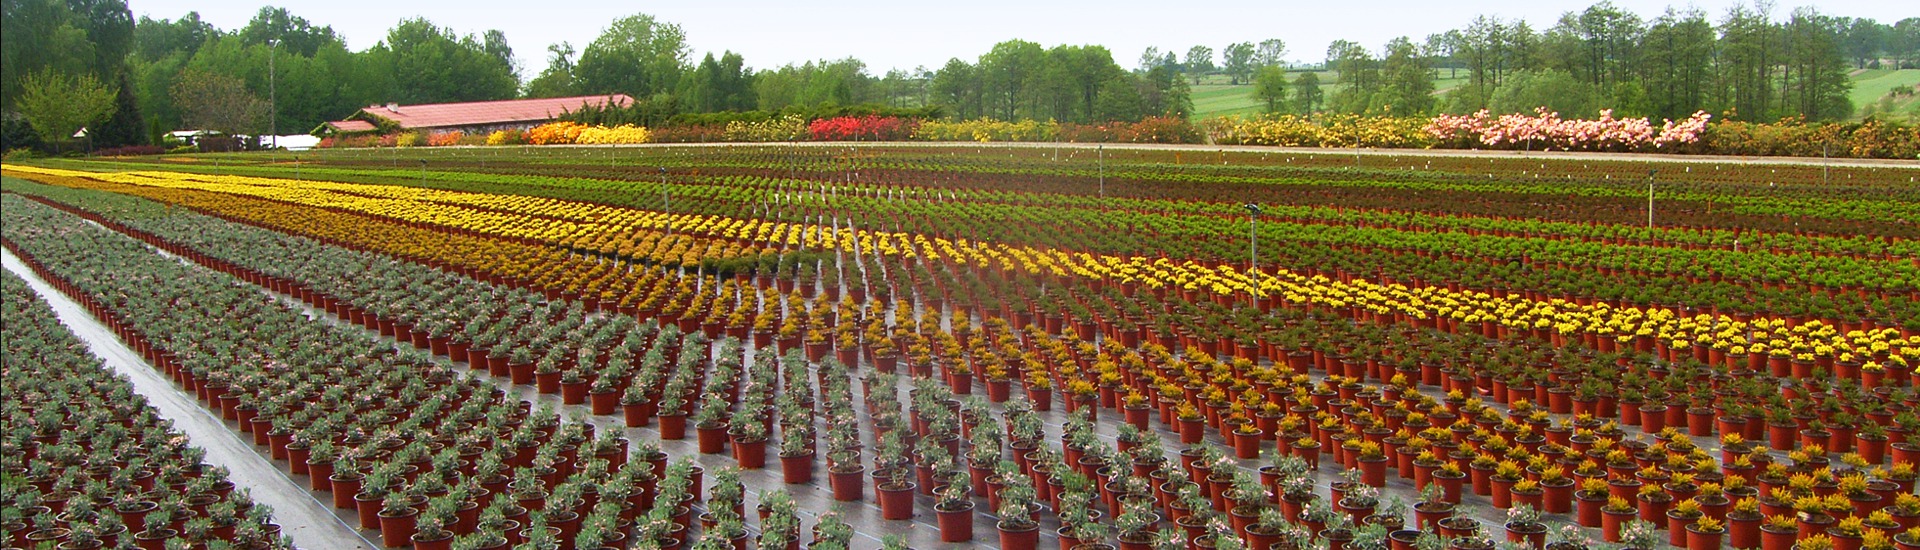 Gärtnerei für Heidepflanzen, Produzent von Setzlingen von Heidepflanzen und japanischen Azaleen - Polen